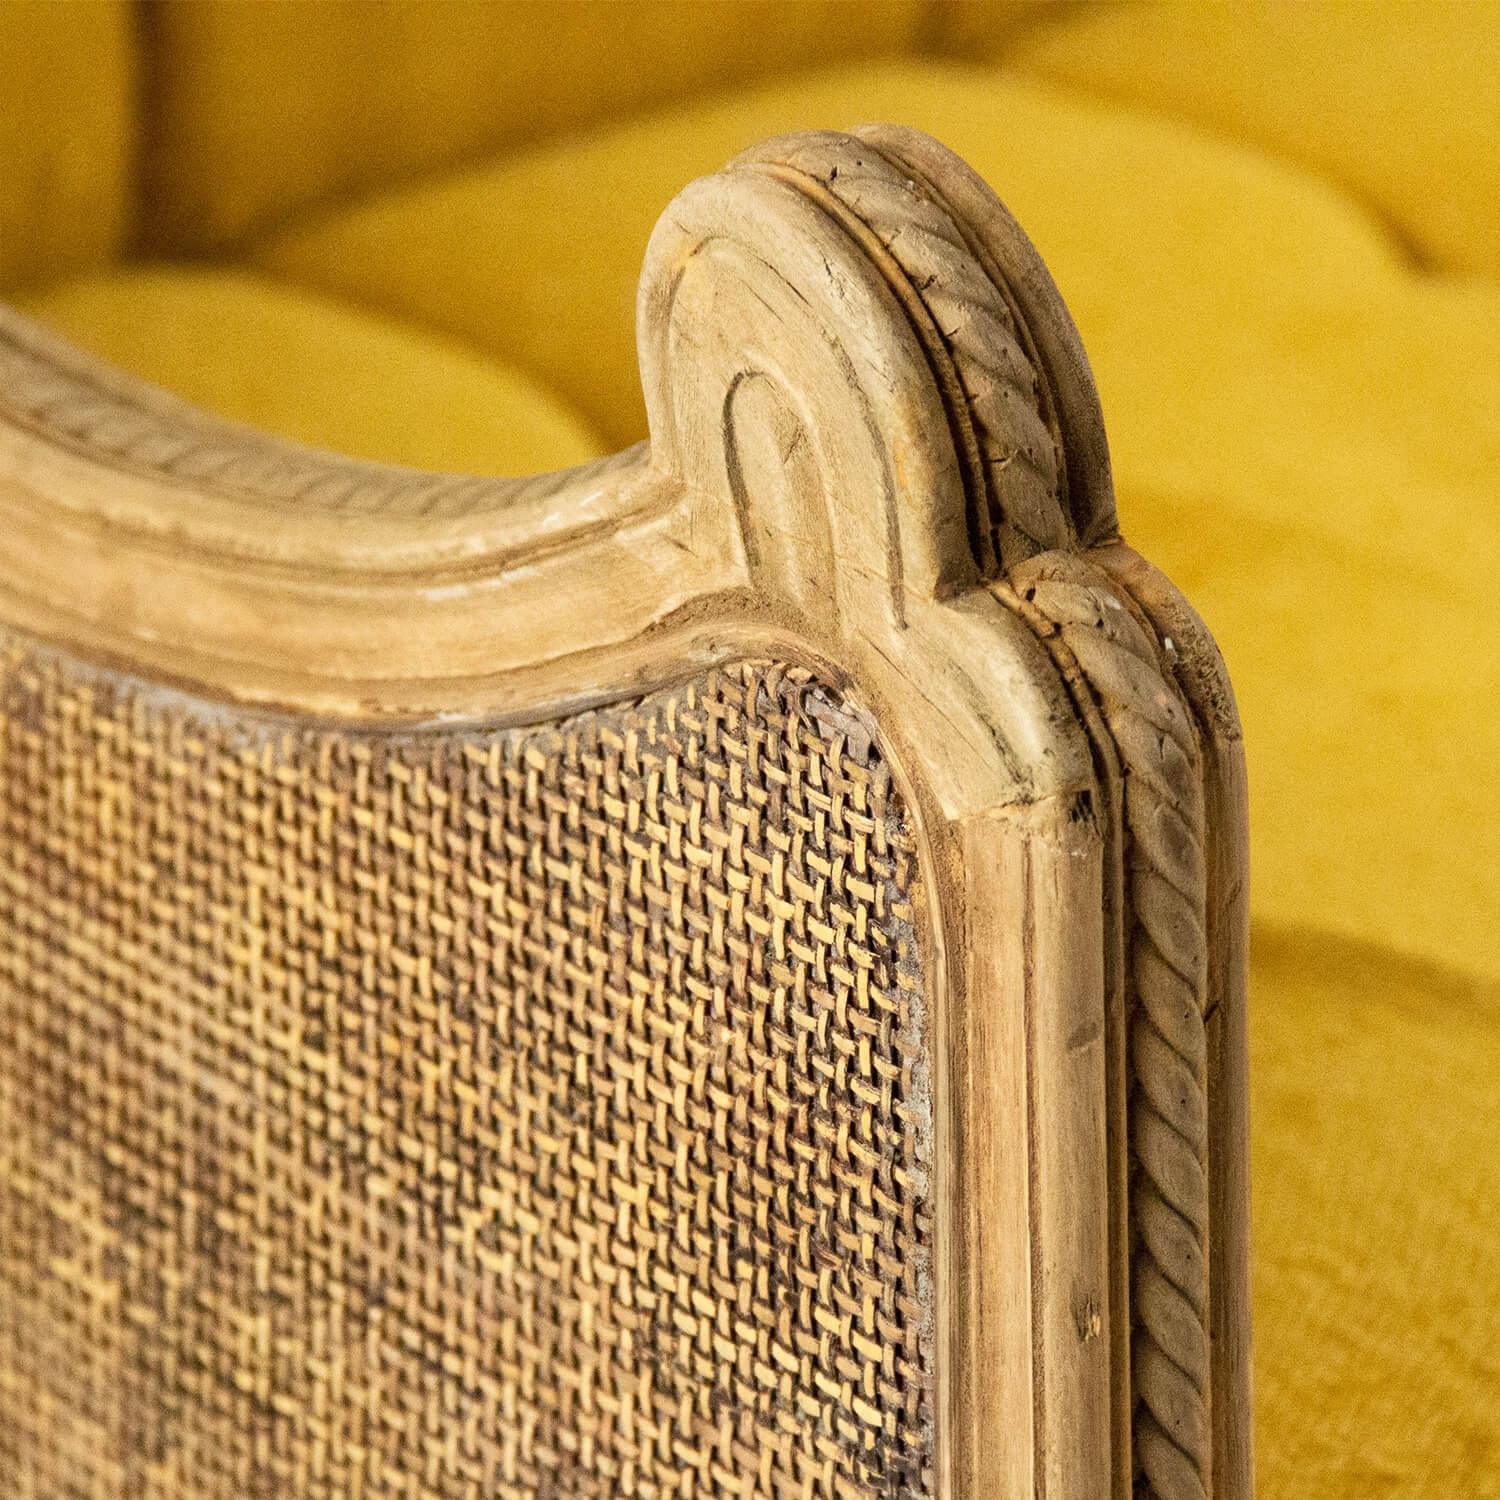 Tufted Provence Yellow Salon Sofa - Belle Escape